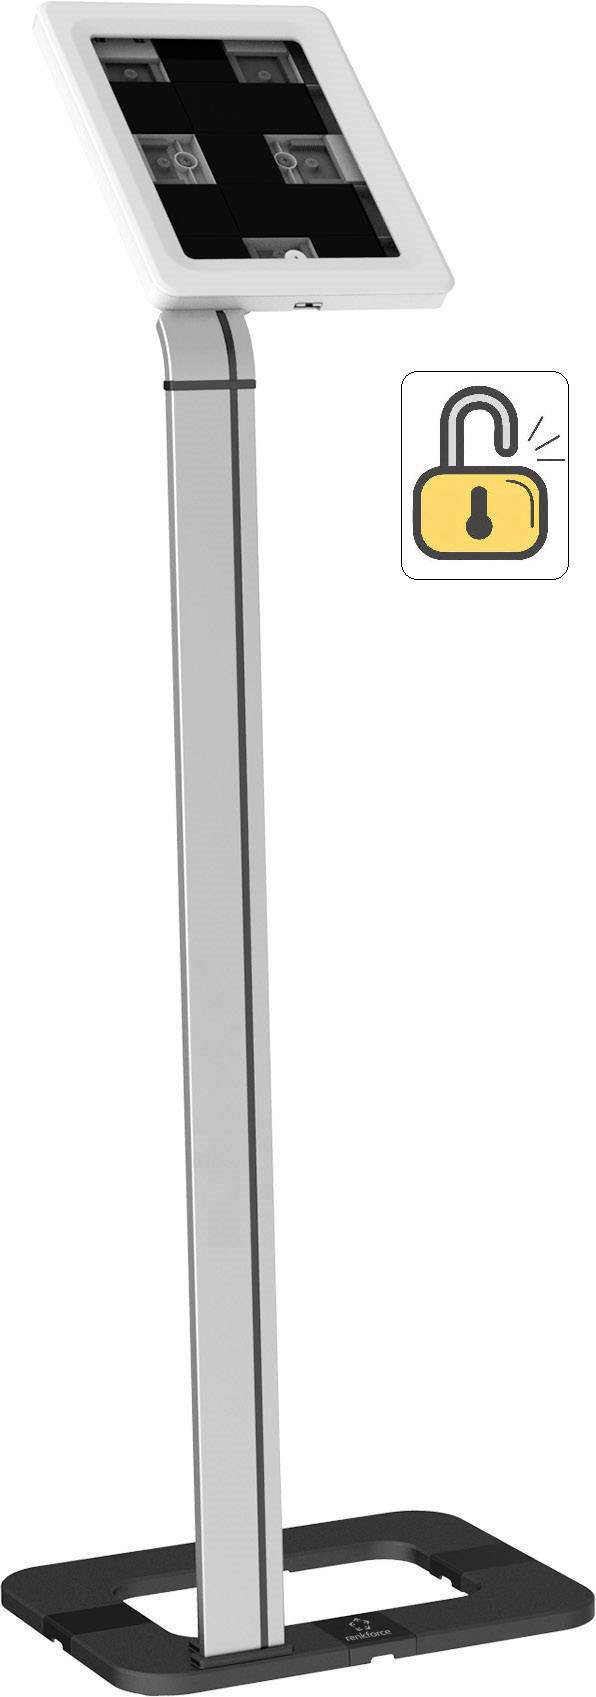 Renkforce Universal KFZ-Kopfstützenhalter für 17.78 cm (7) Tablet-Halterung,  Sicherer Halt für alle Tablets von 17.78 cm (7) - 26.4 cm (10.4)